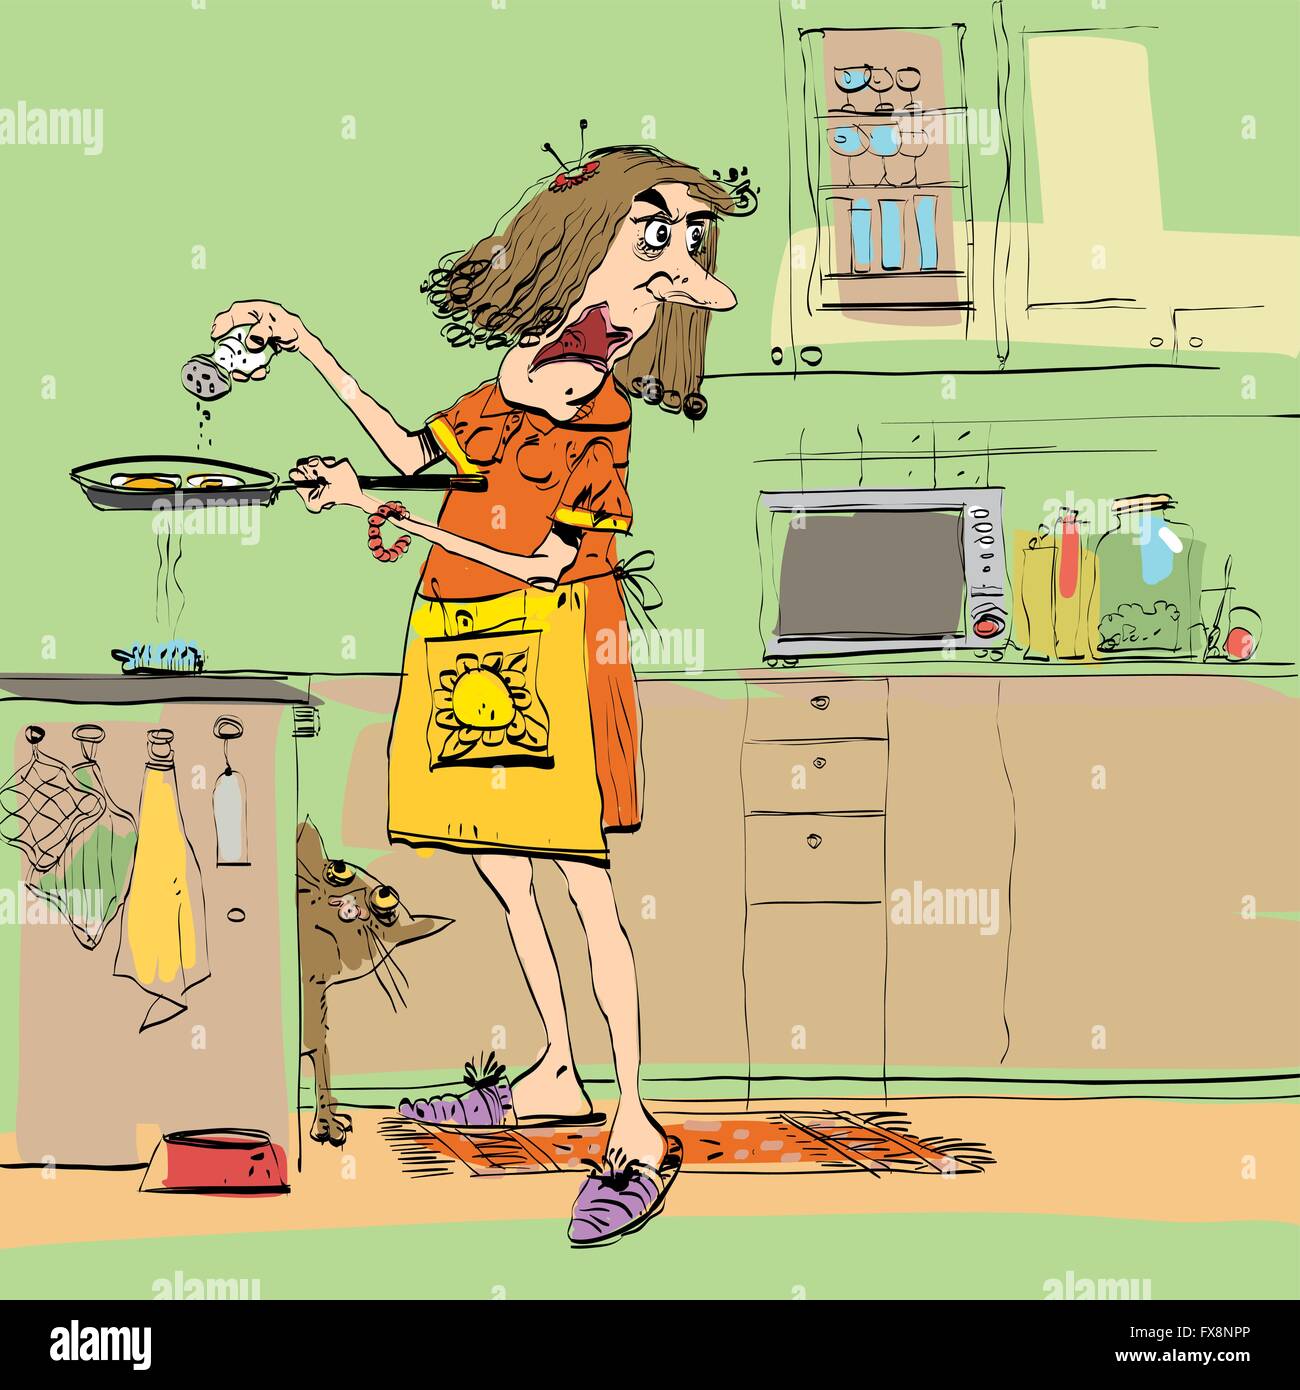 Выглядишь уставшей. Карикатуры на женщин. Уставшая женщина на кухне. Женщина на кухне карикатура. Уставшая хозяйка на кухне.